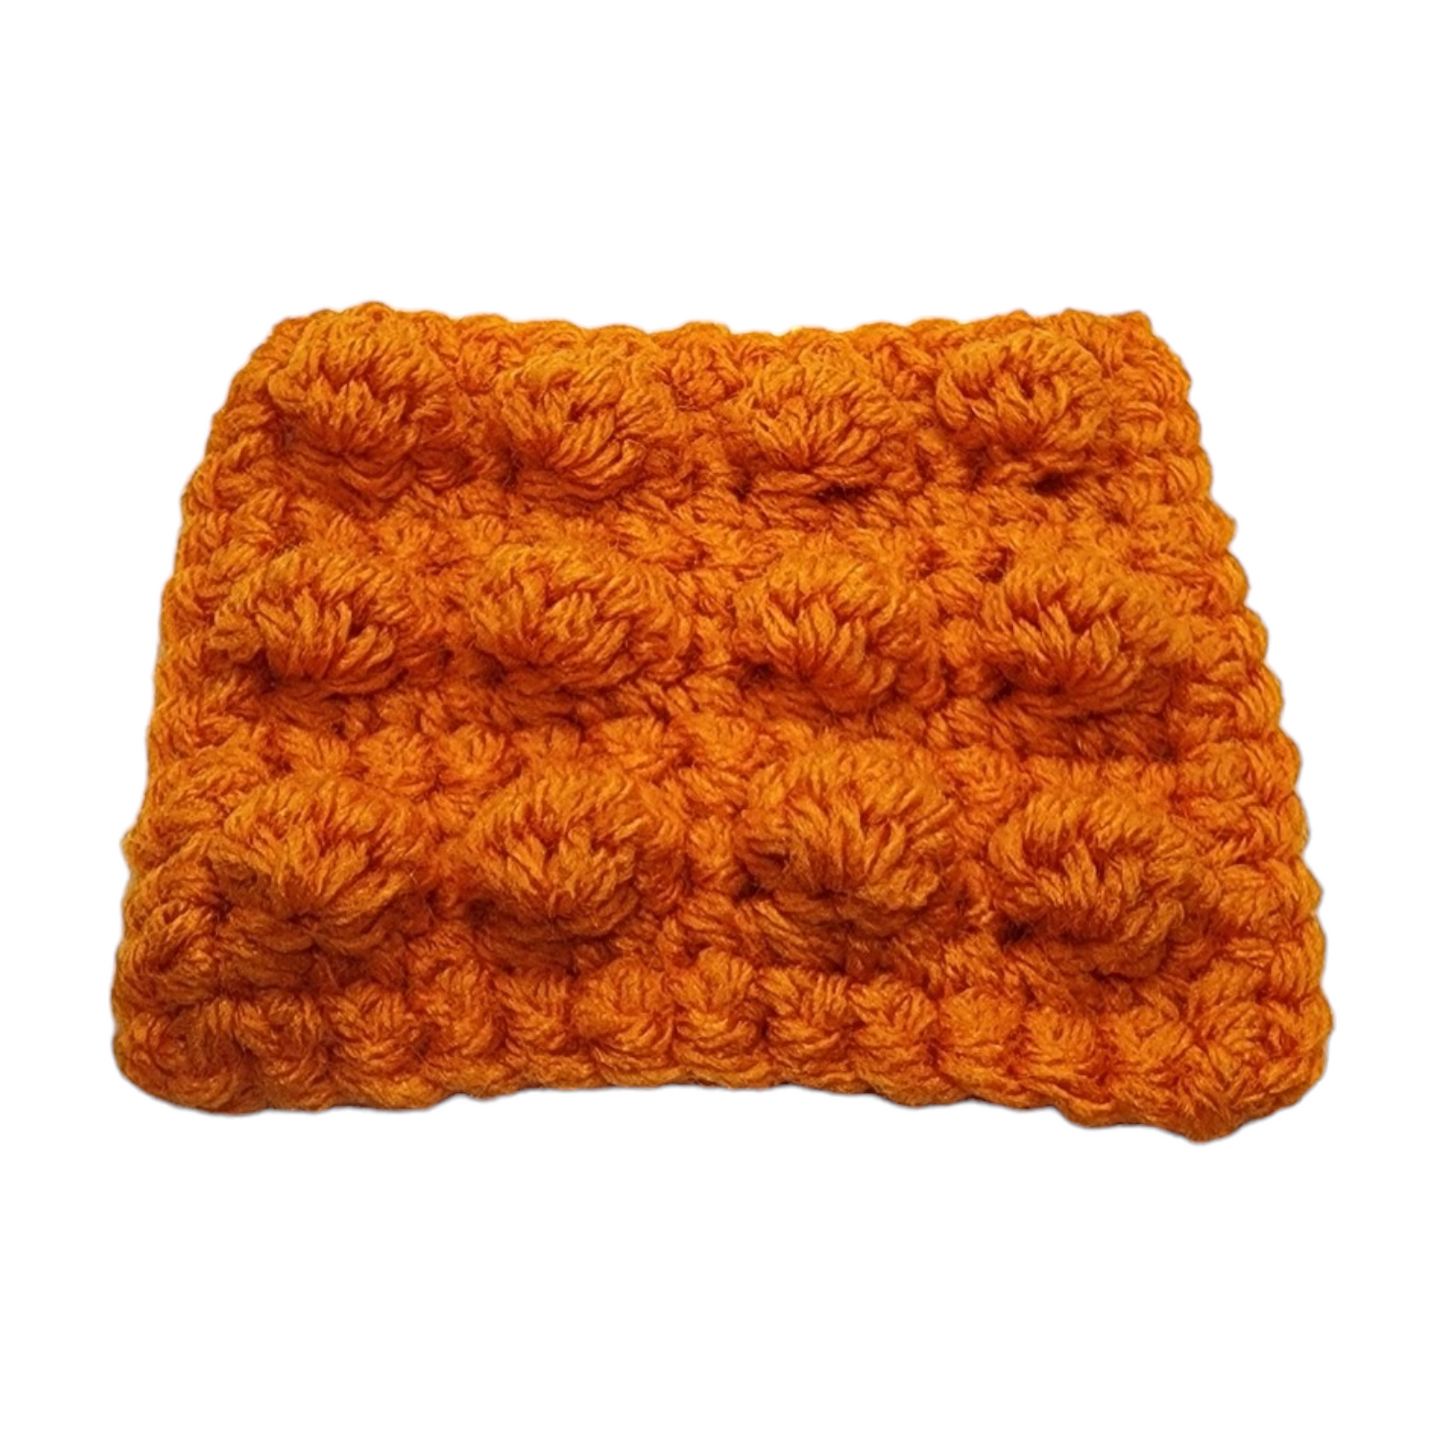 Crochet Pop Fidget Toy